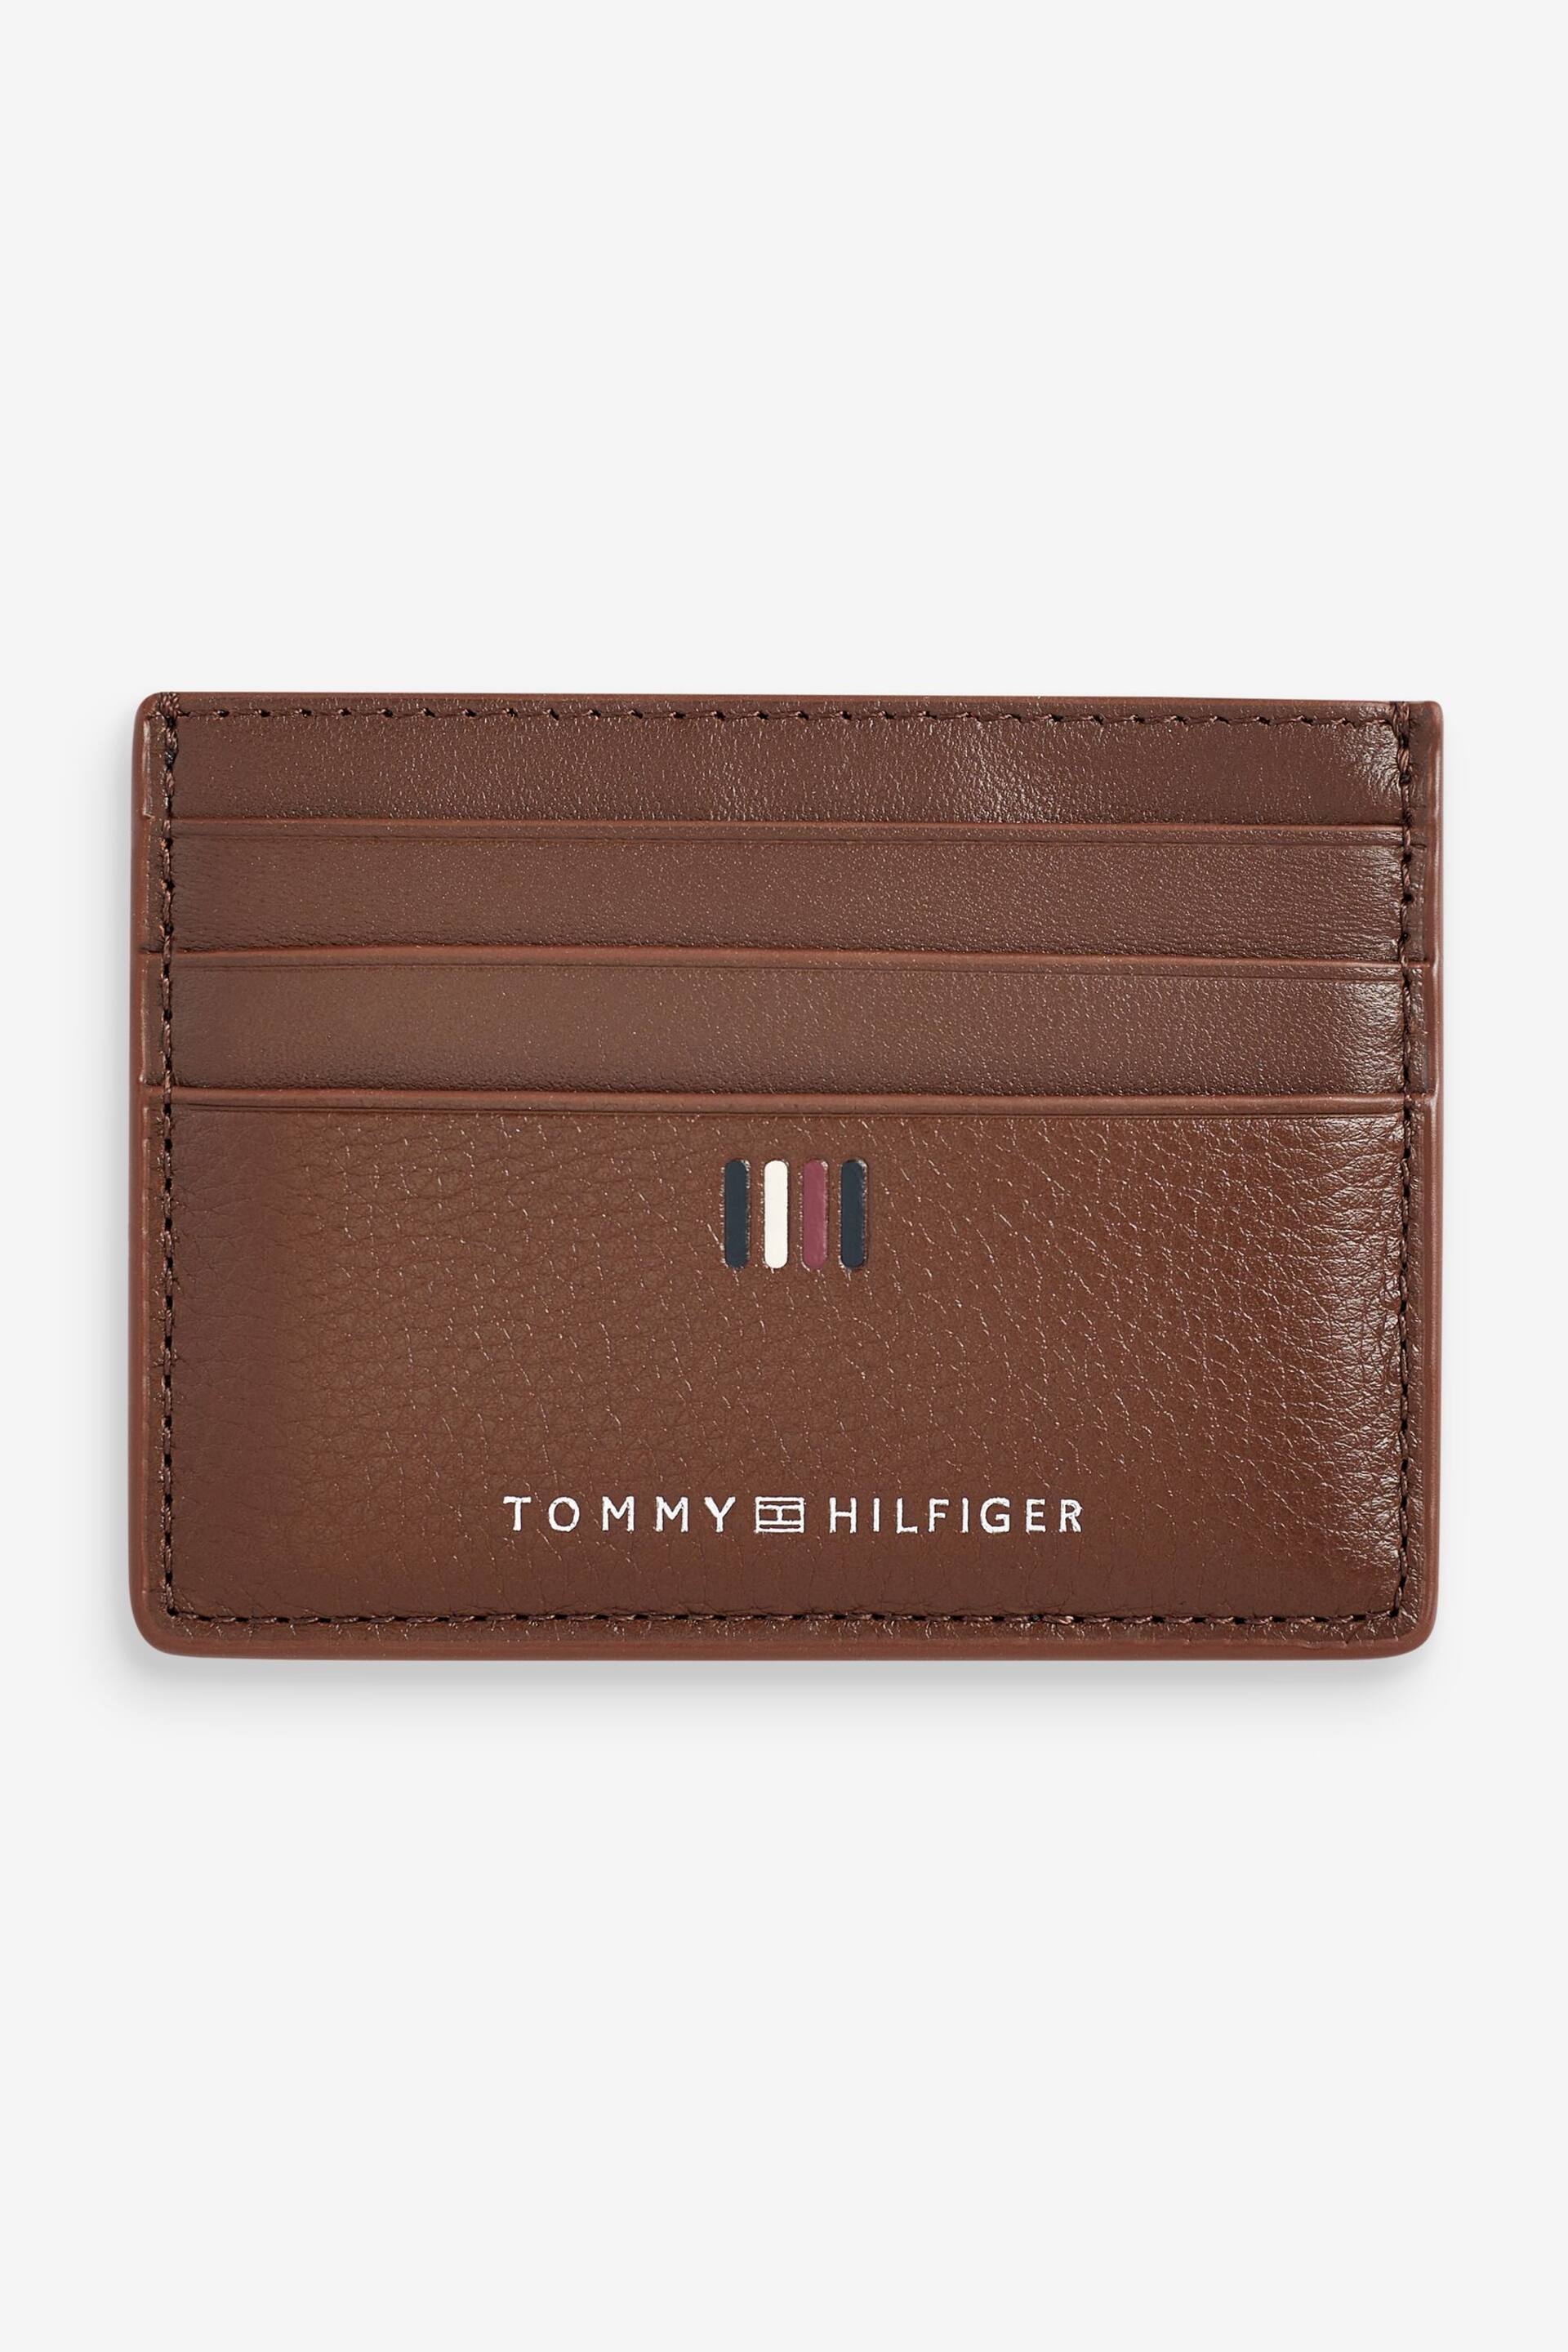 Tommy Hilfiger Central Brown Card Holder - Image 1 of 2